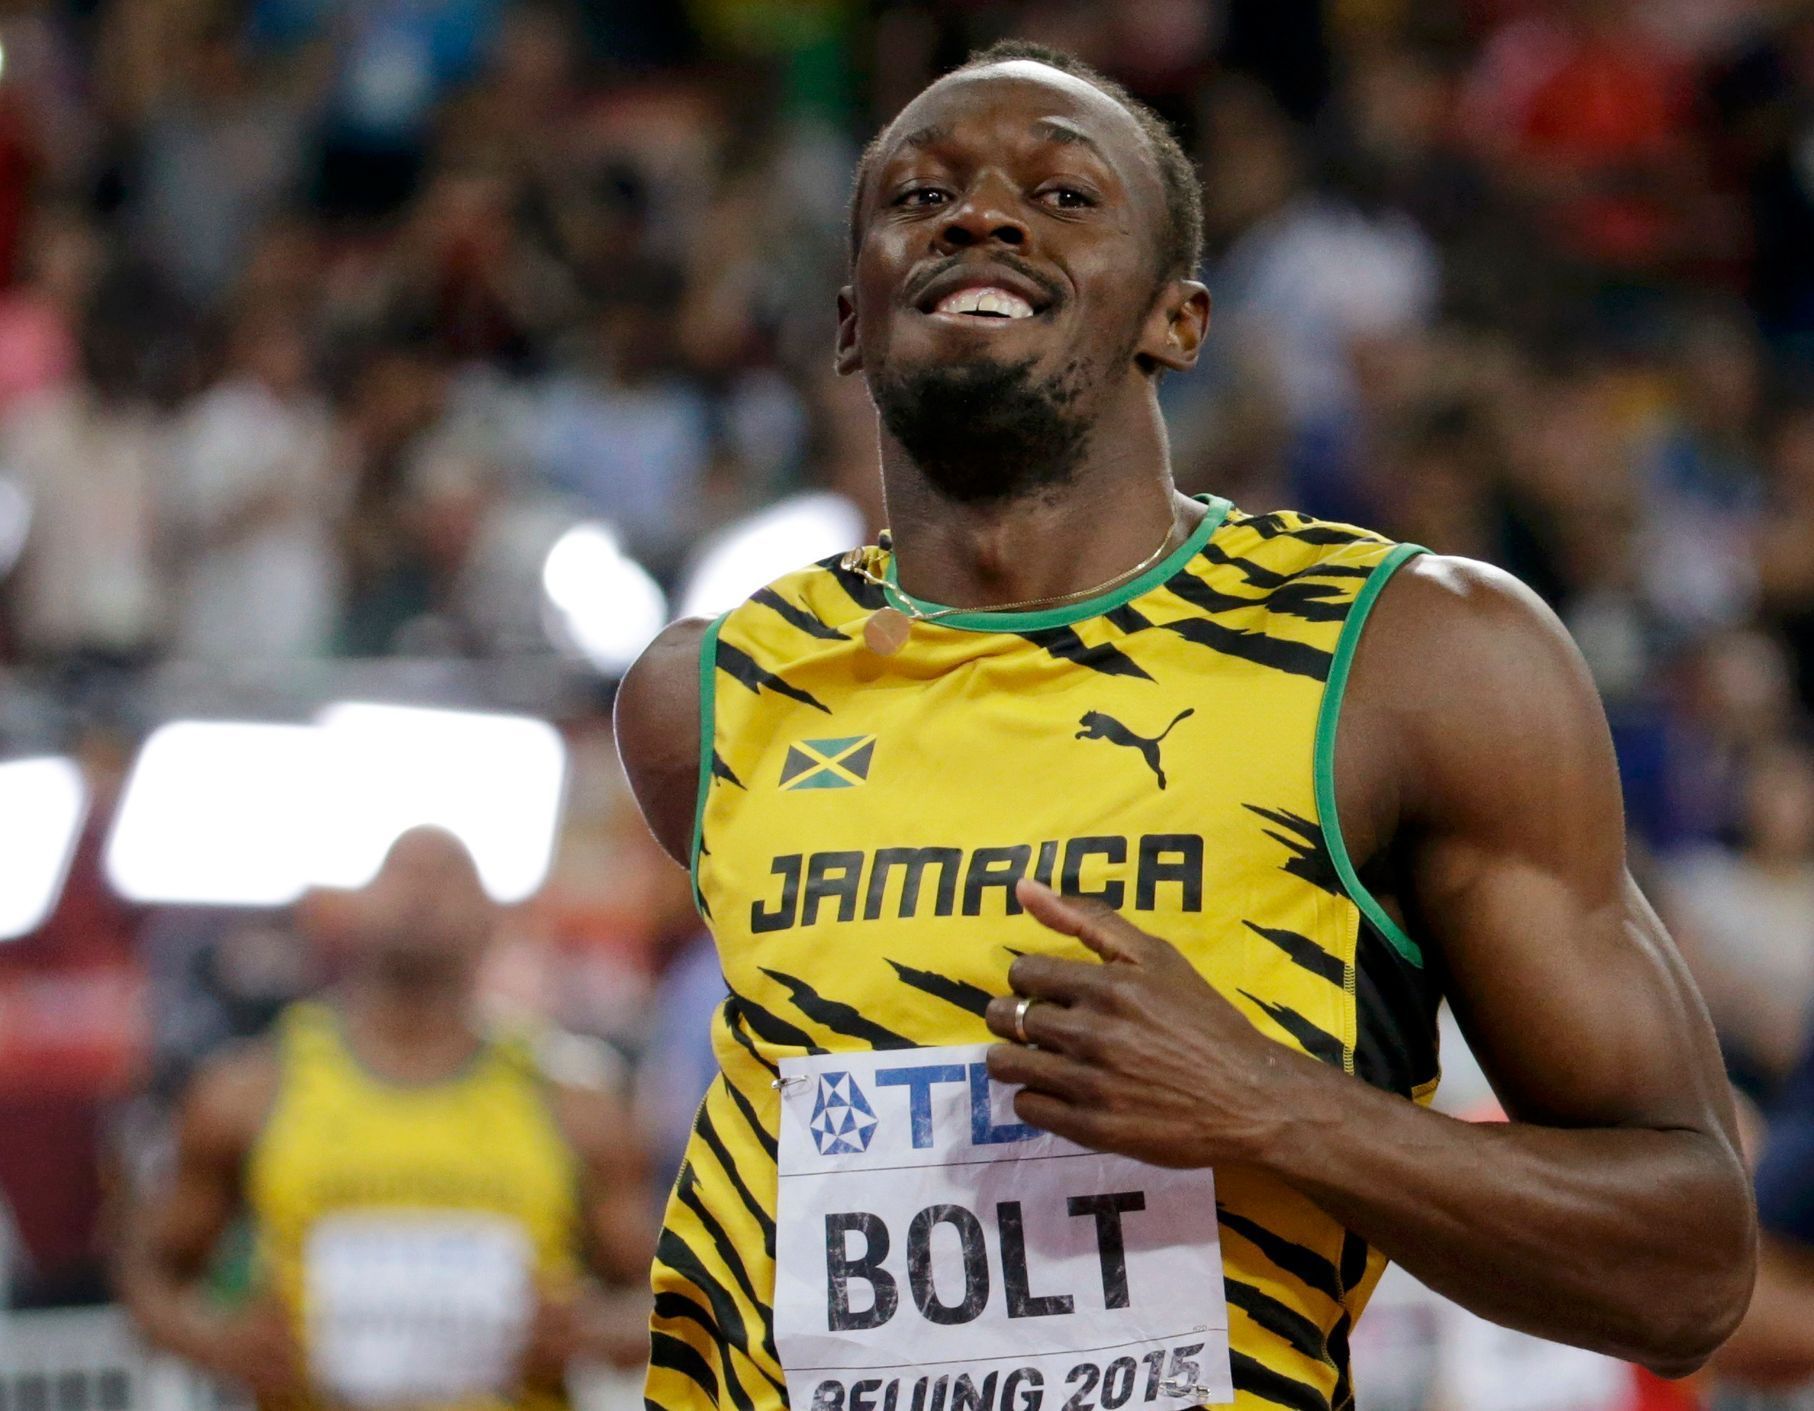 MS v atletice 2015 - neděle 23. srpna (finále běhu na 100 m - Bolt slaví)